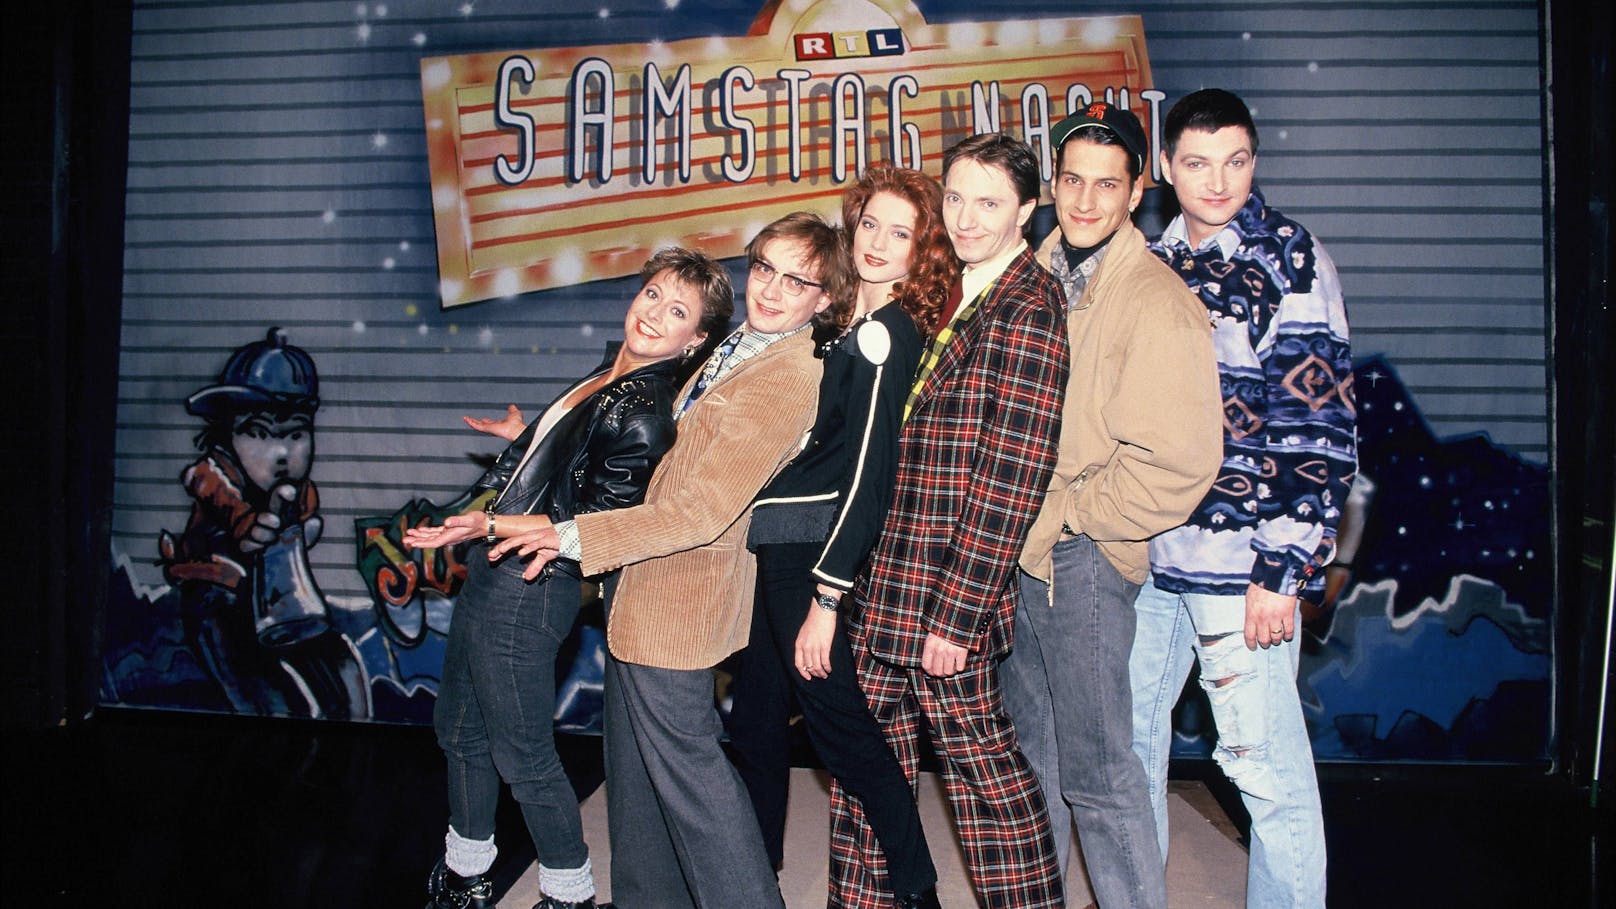 Die Kult-Truppe von "<strong>RTL Samstag Nacht</strong>": Tanja Schumann, Wigald Boning, Esther Schweins, Olli Dittrich, Mirco Nontschew, Stefan Jürgens (v.l.n.r., 1993)